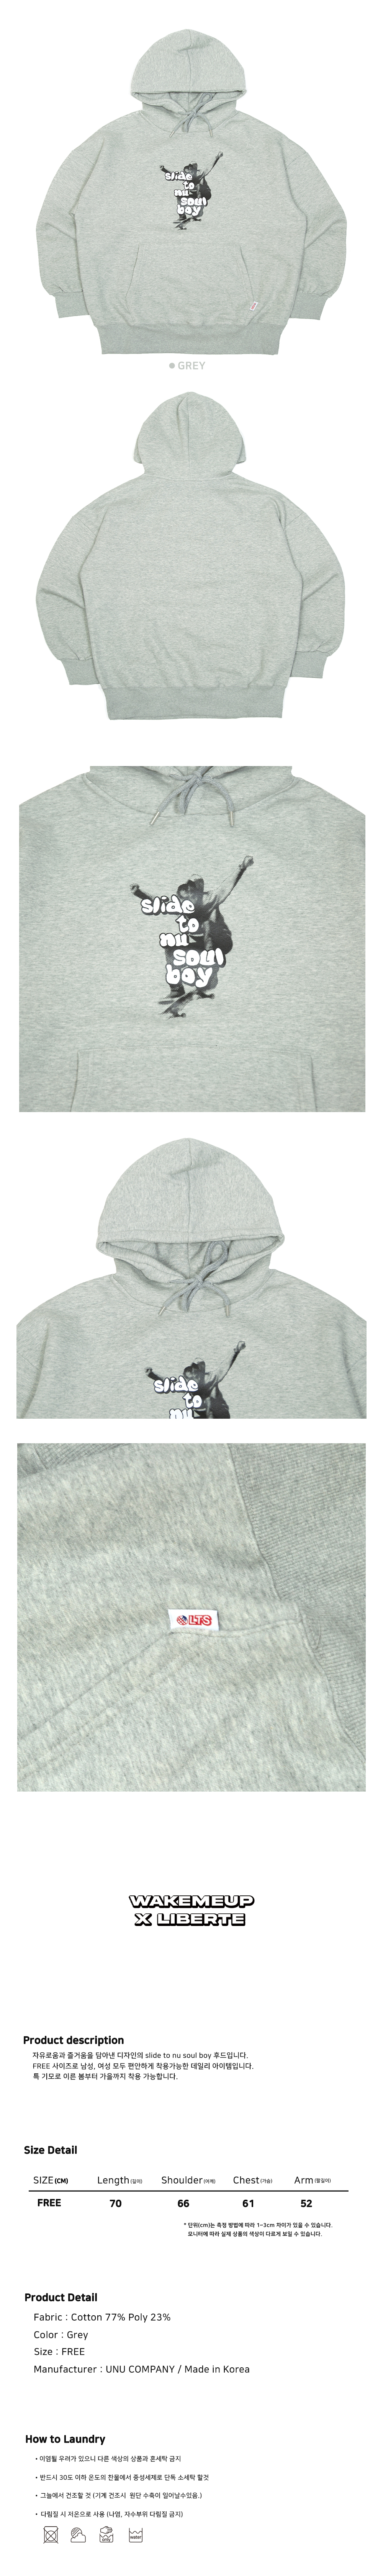 Skate print hoodie grey